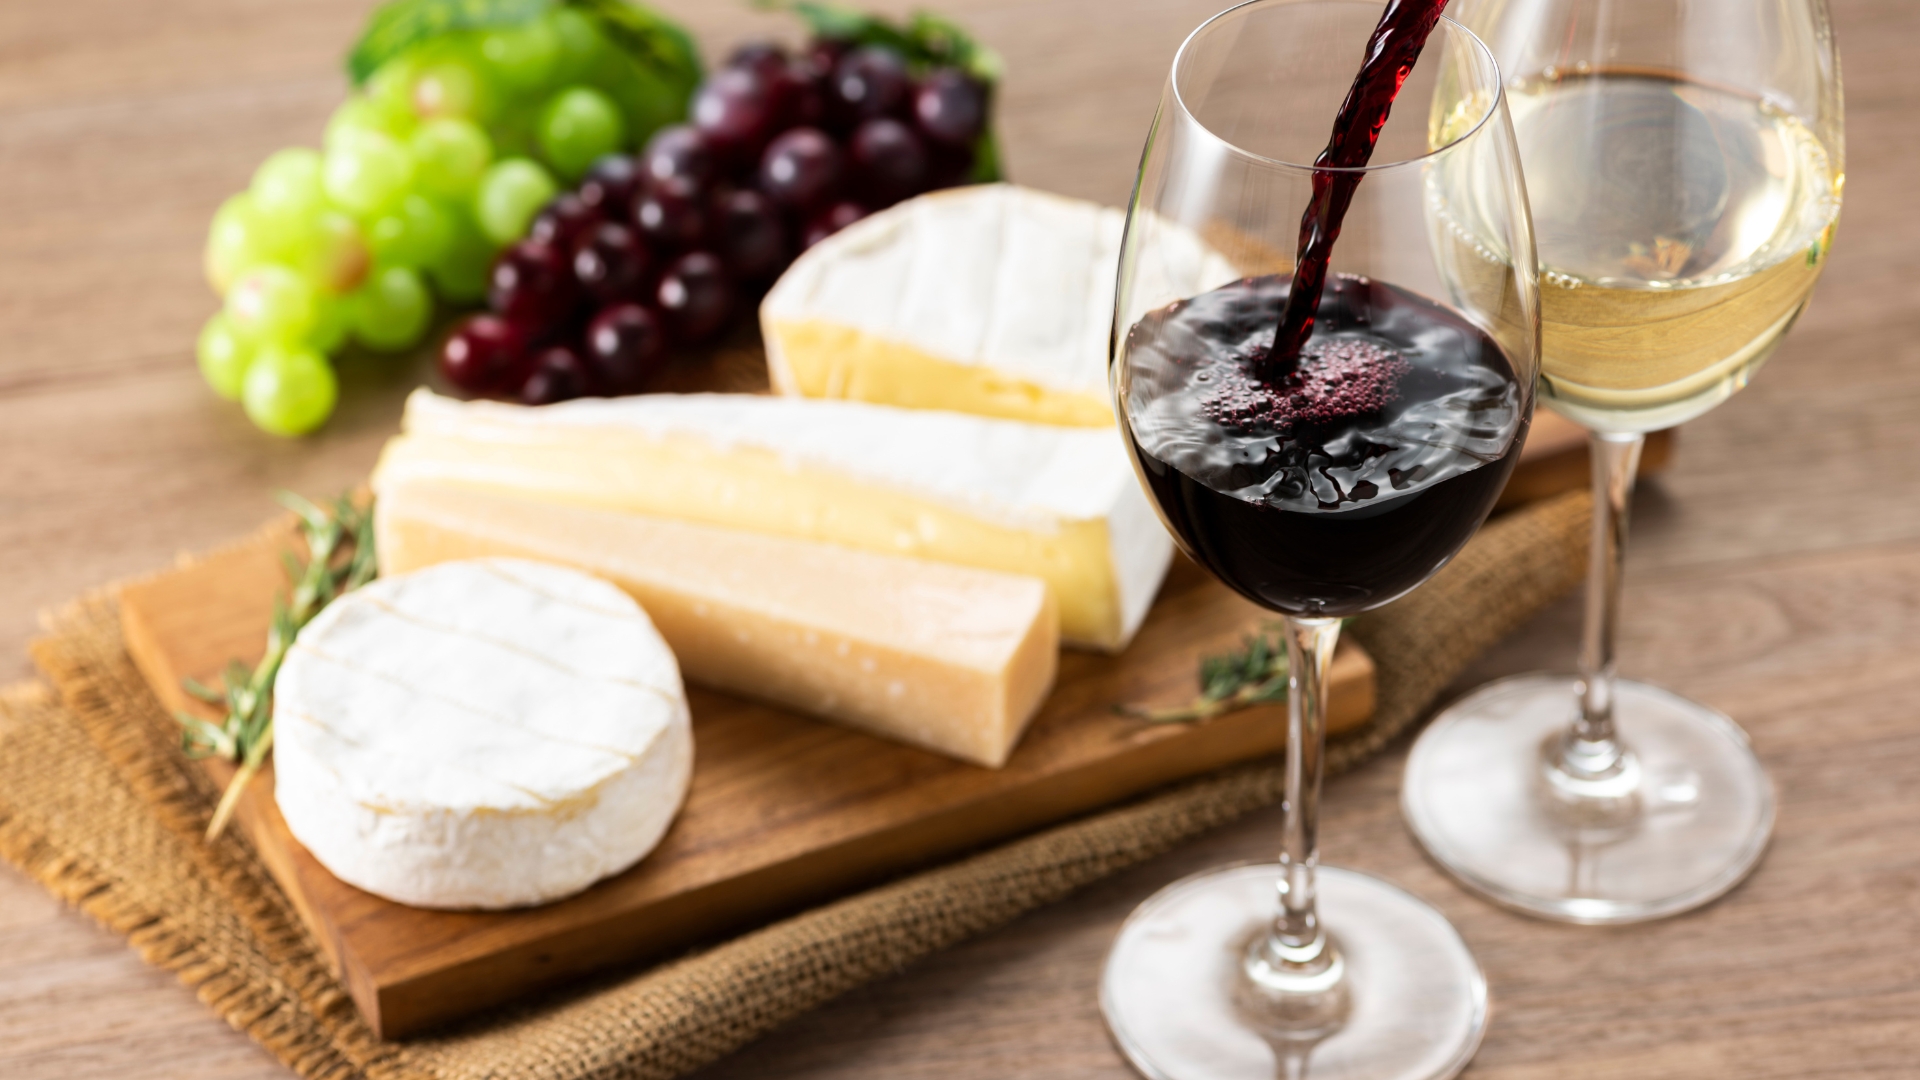 Les fans de vins et de fromage pourront désormais approfondir leurs connaissances (Image d'illustration: Canva)